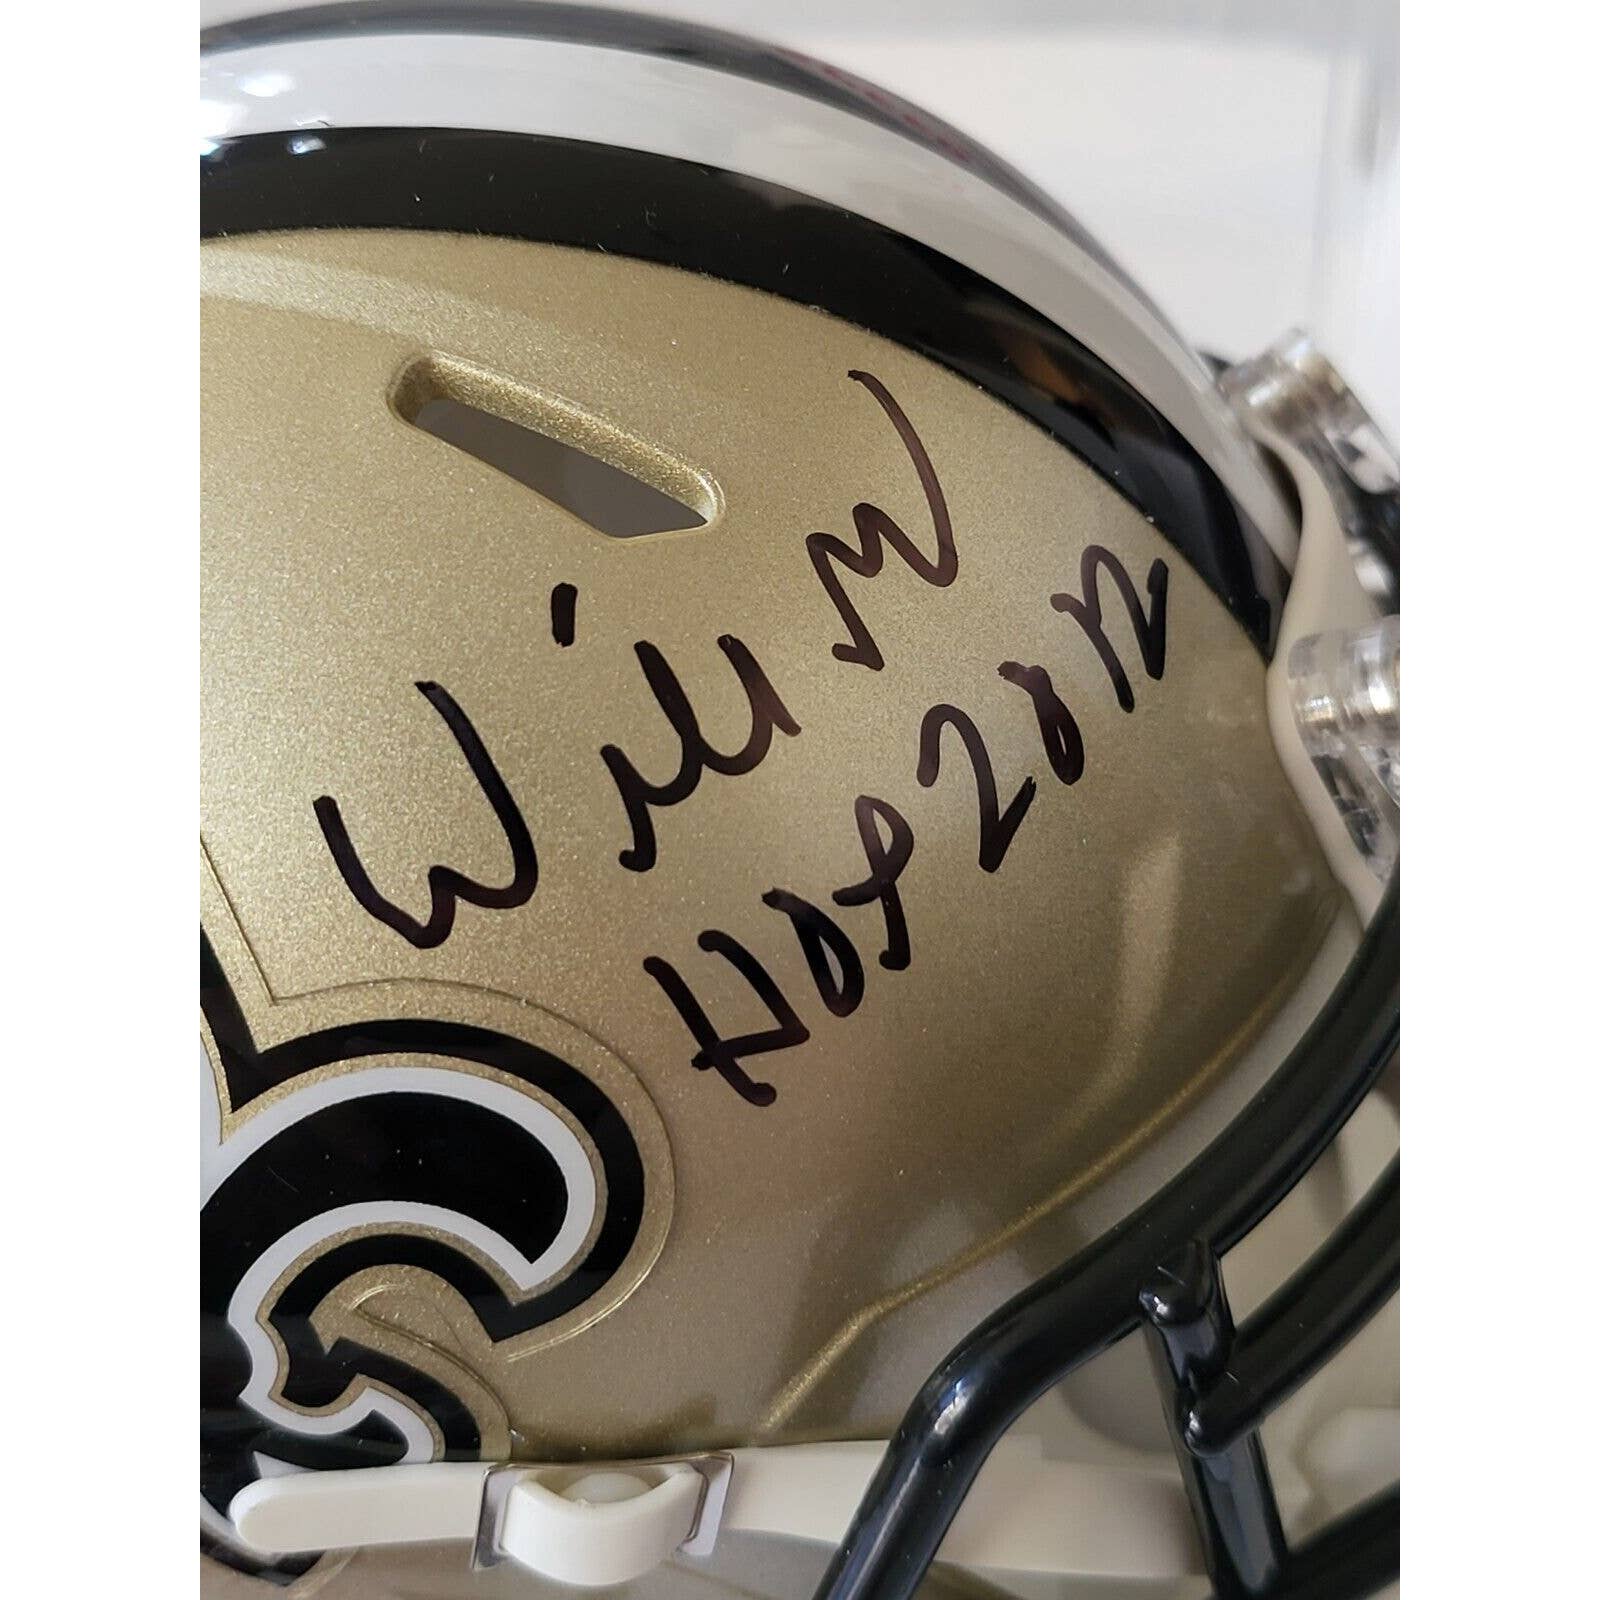 Willie Roaf Autographed/Signed Mini Helmet JSA New Orleans Saints HOF - TreasuresEvolved